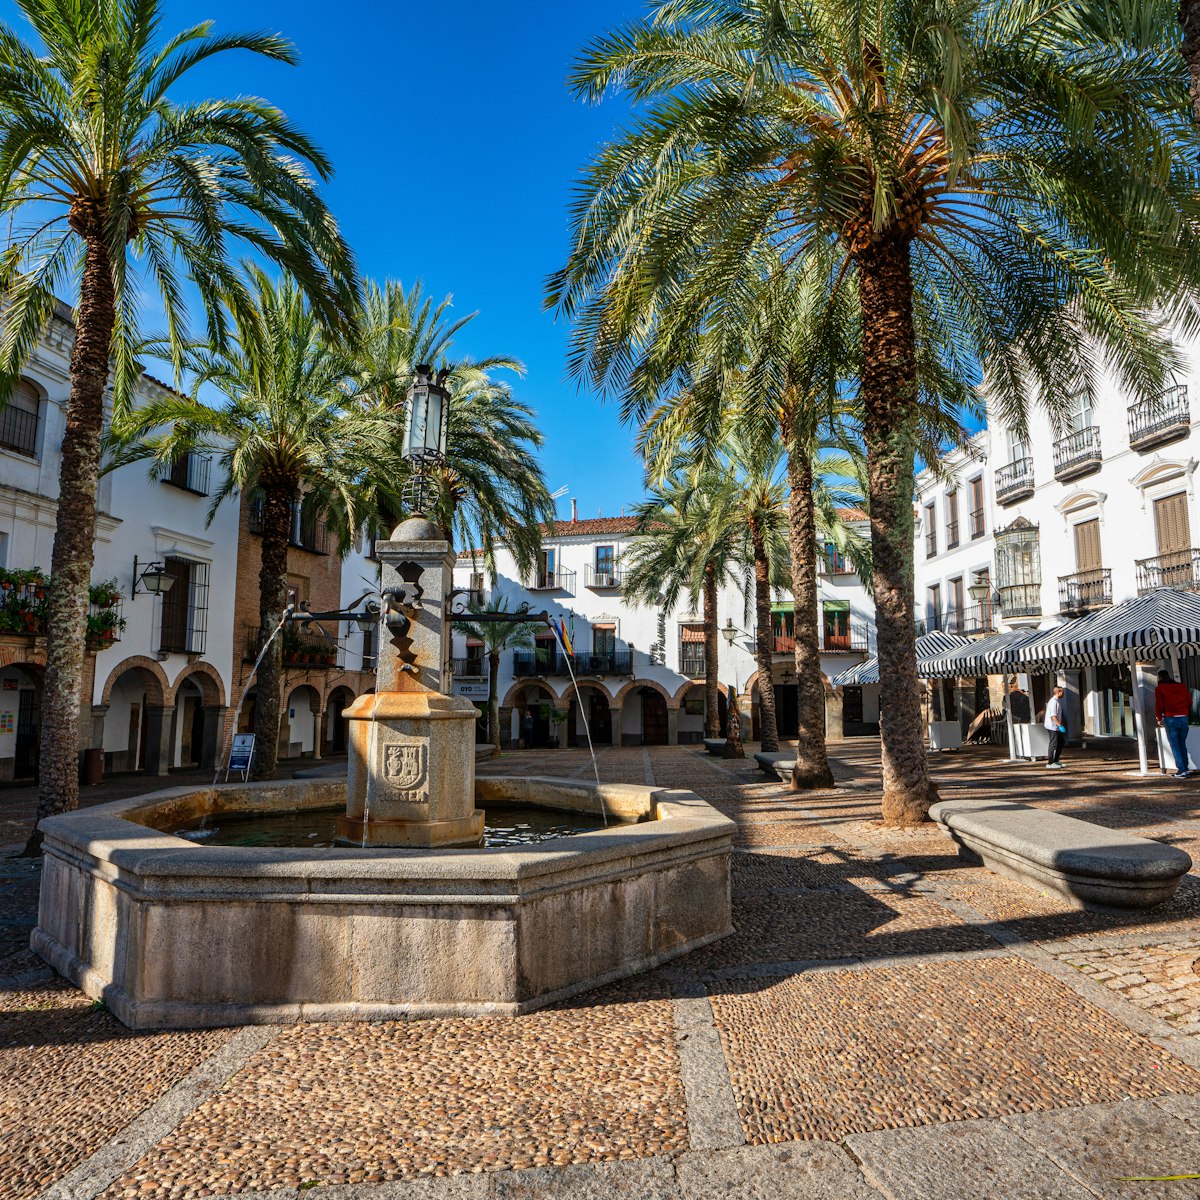 Plaza Grande in Zafra, Spain.